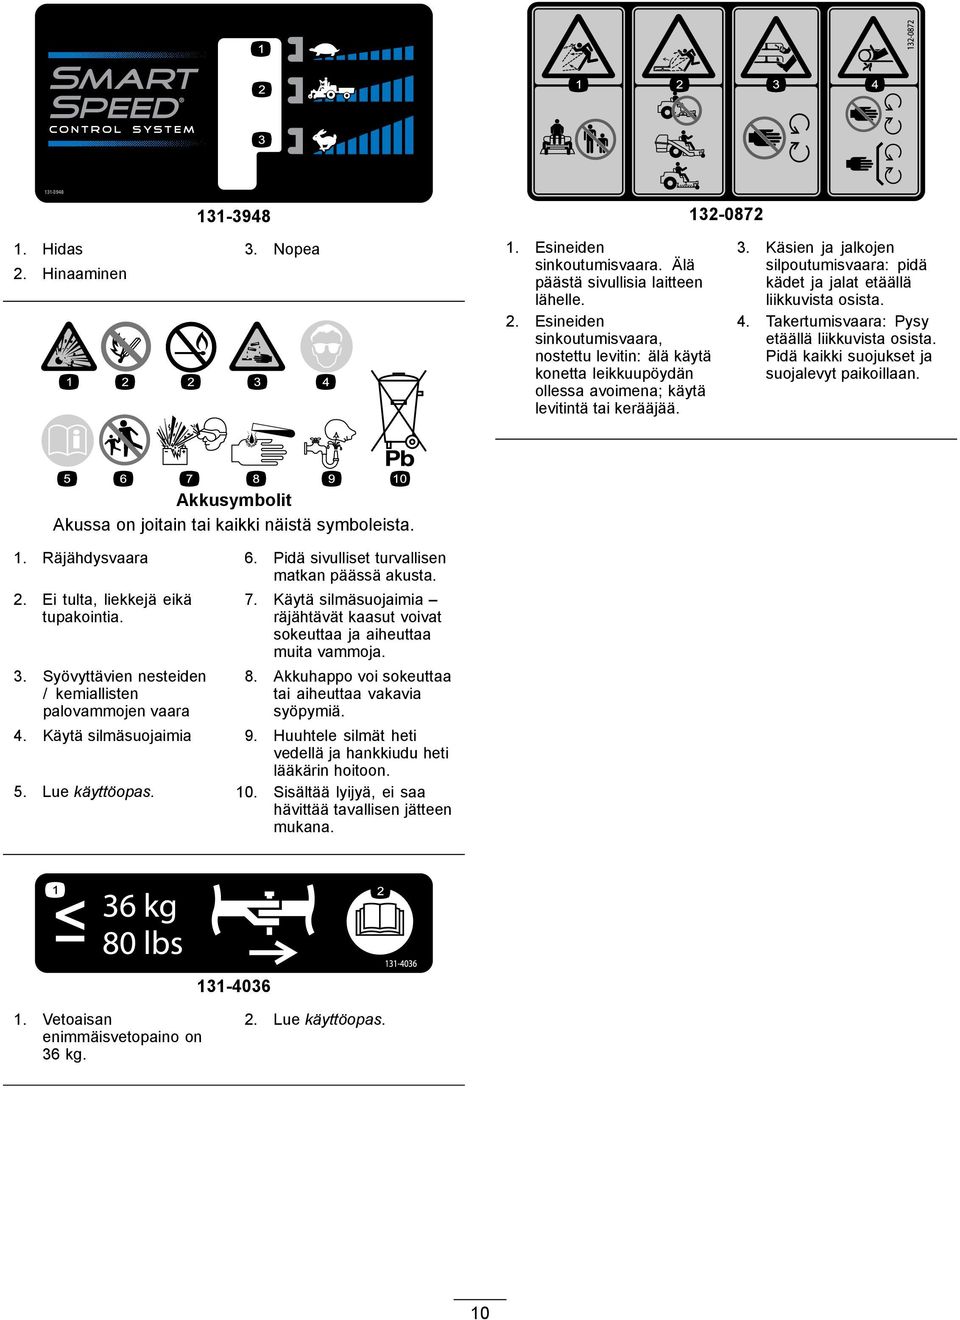 Akkusymbolit Akussa on joitain tai kaikki näistä symboleista. 1. Räjähdysvaara 6. Pidä sivulliset turvallisen matkan päässä akusta. 2. Ei tulta, liekkejä eikä tupakointia. 3.